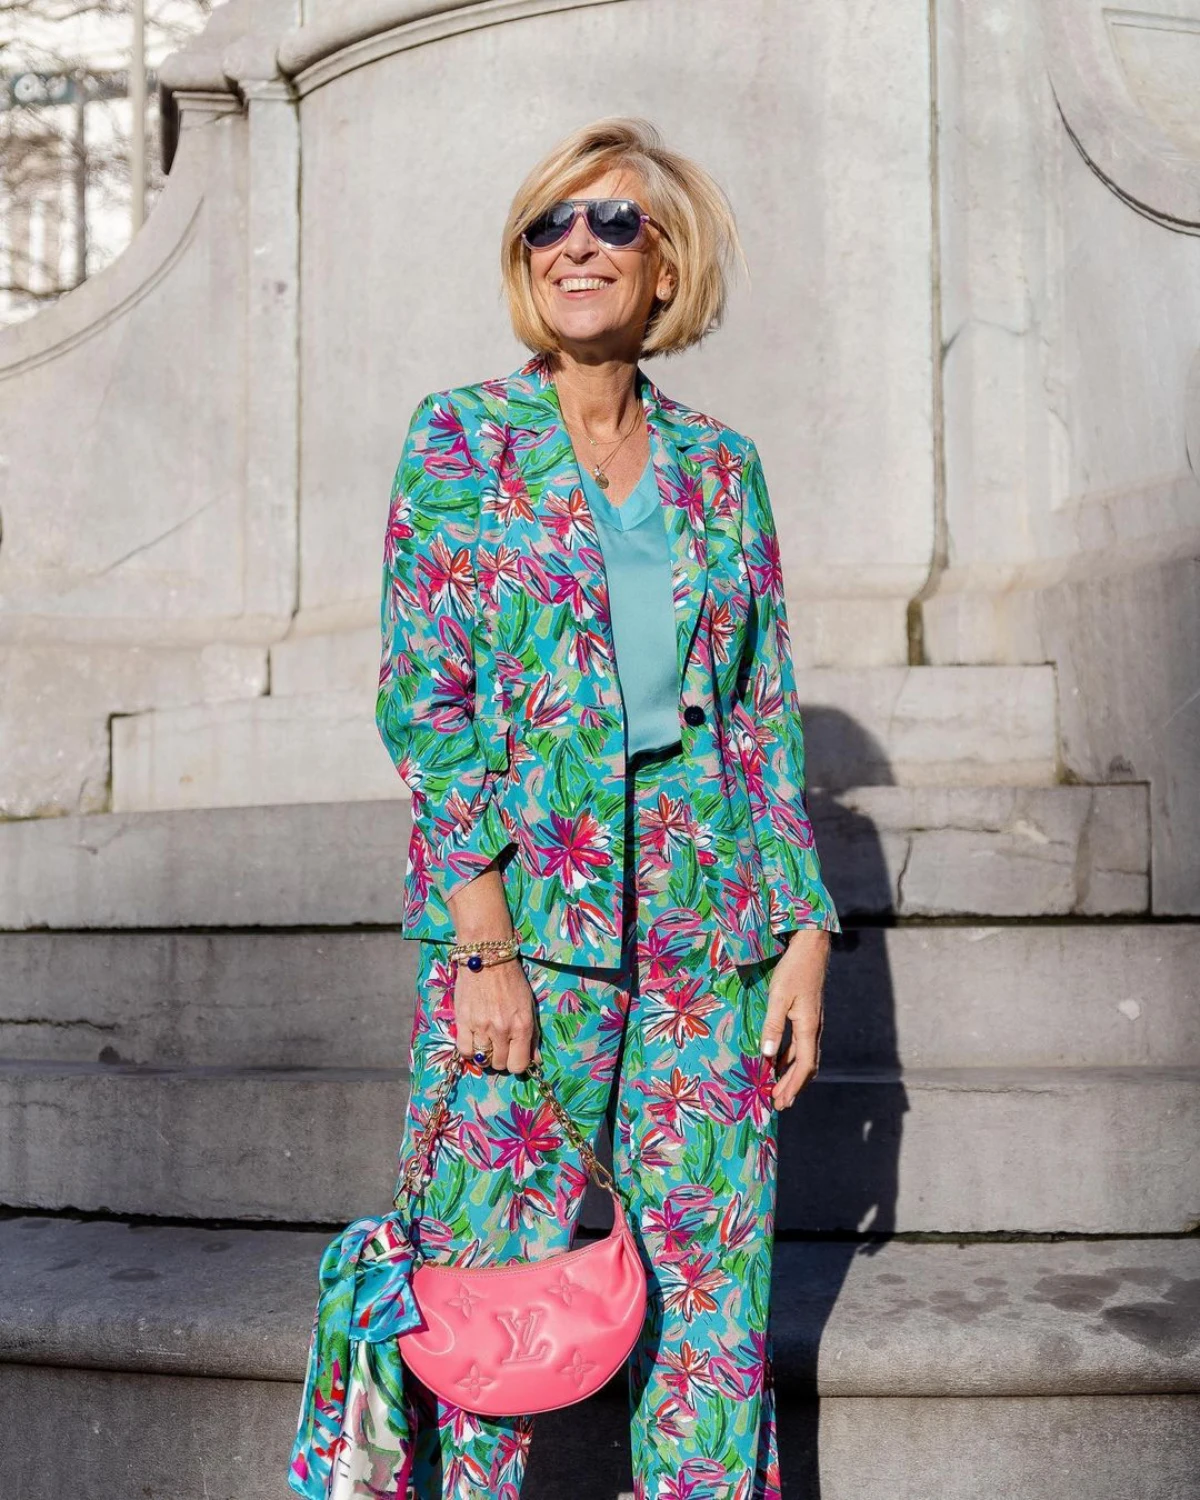 idee de look printemps 2020 femme 60 ans style boheme chic fleurs vert rose